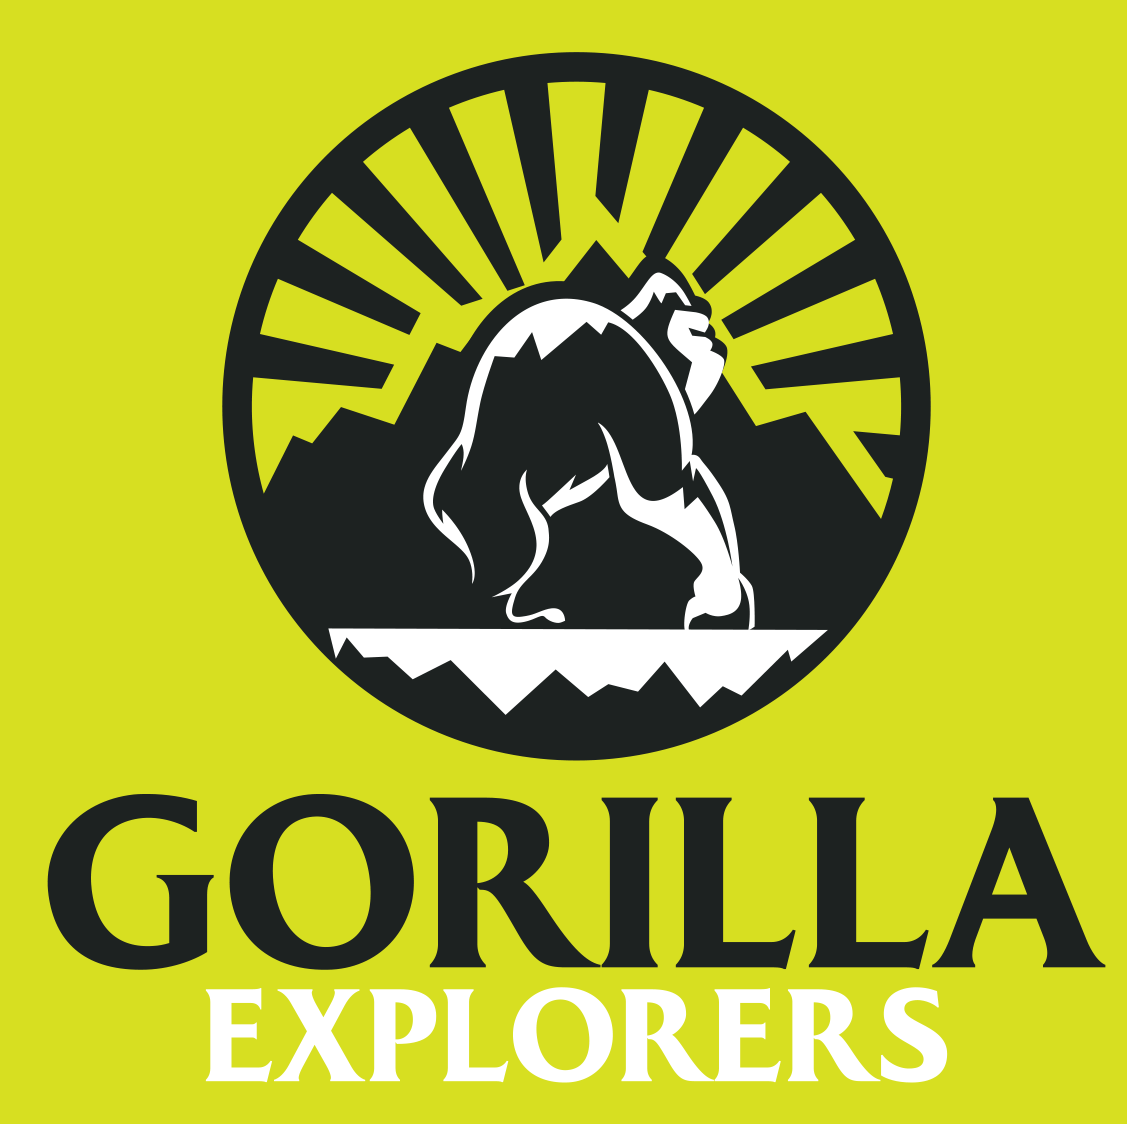 GORILLA EXPLORERS